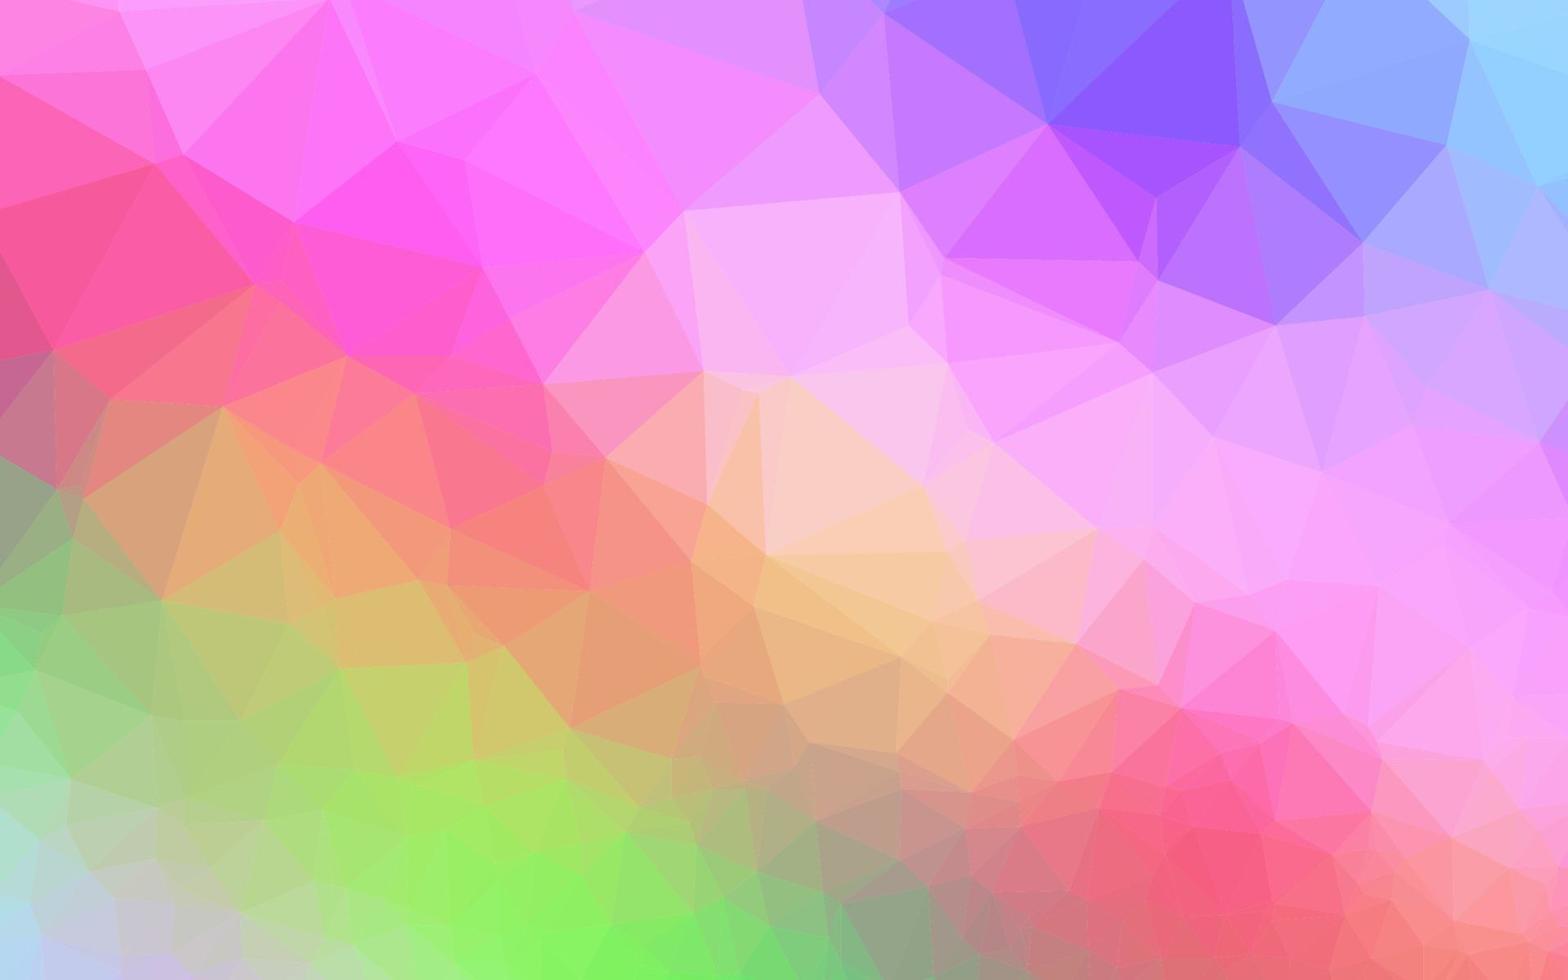 luz multicolor, vector de arco iris brillante patrón triangular.